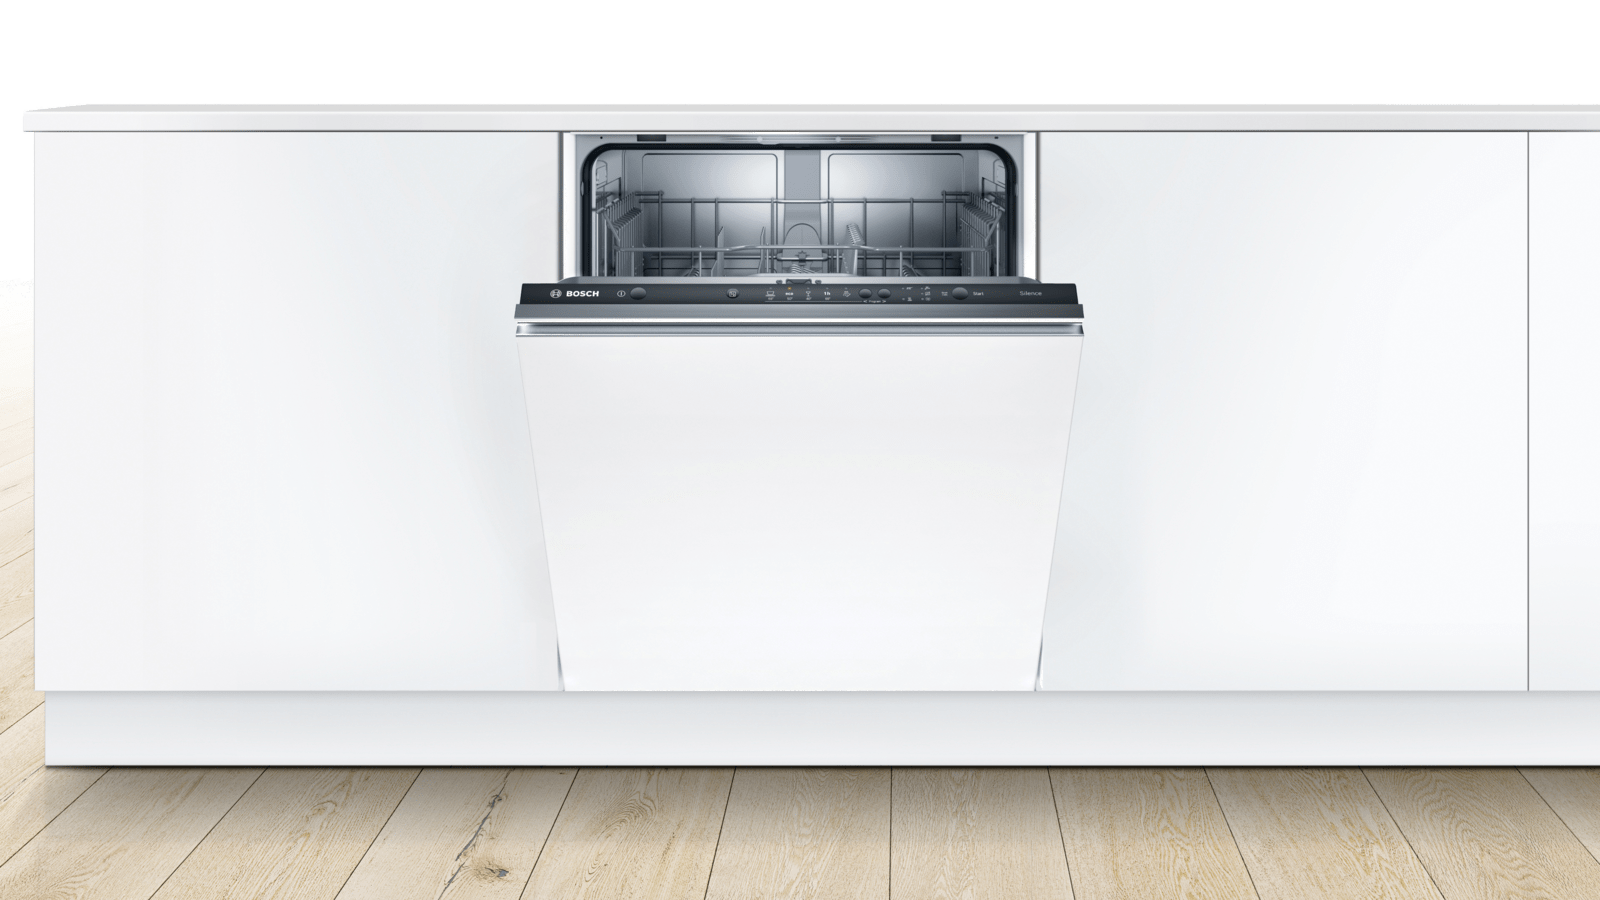 Как выбрать встраиваемую посудомоечную машину bosch 60 см: топ-5 моделей и их технические характеристики + отзывы покупателей